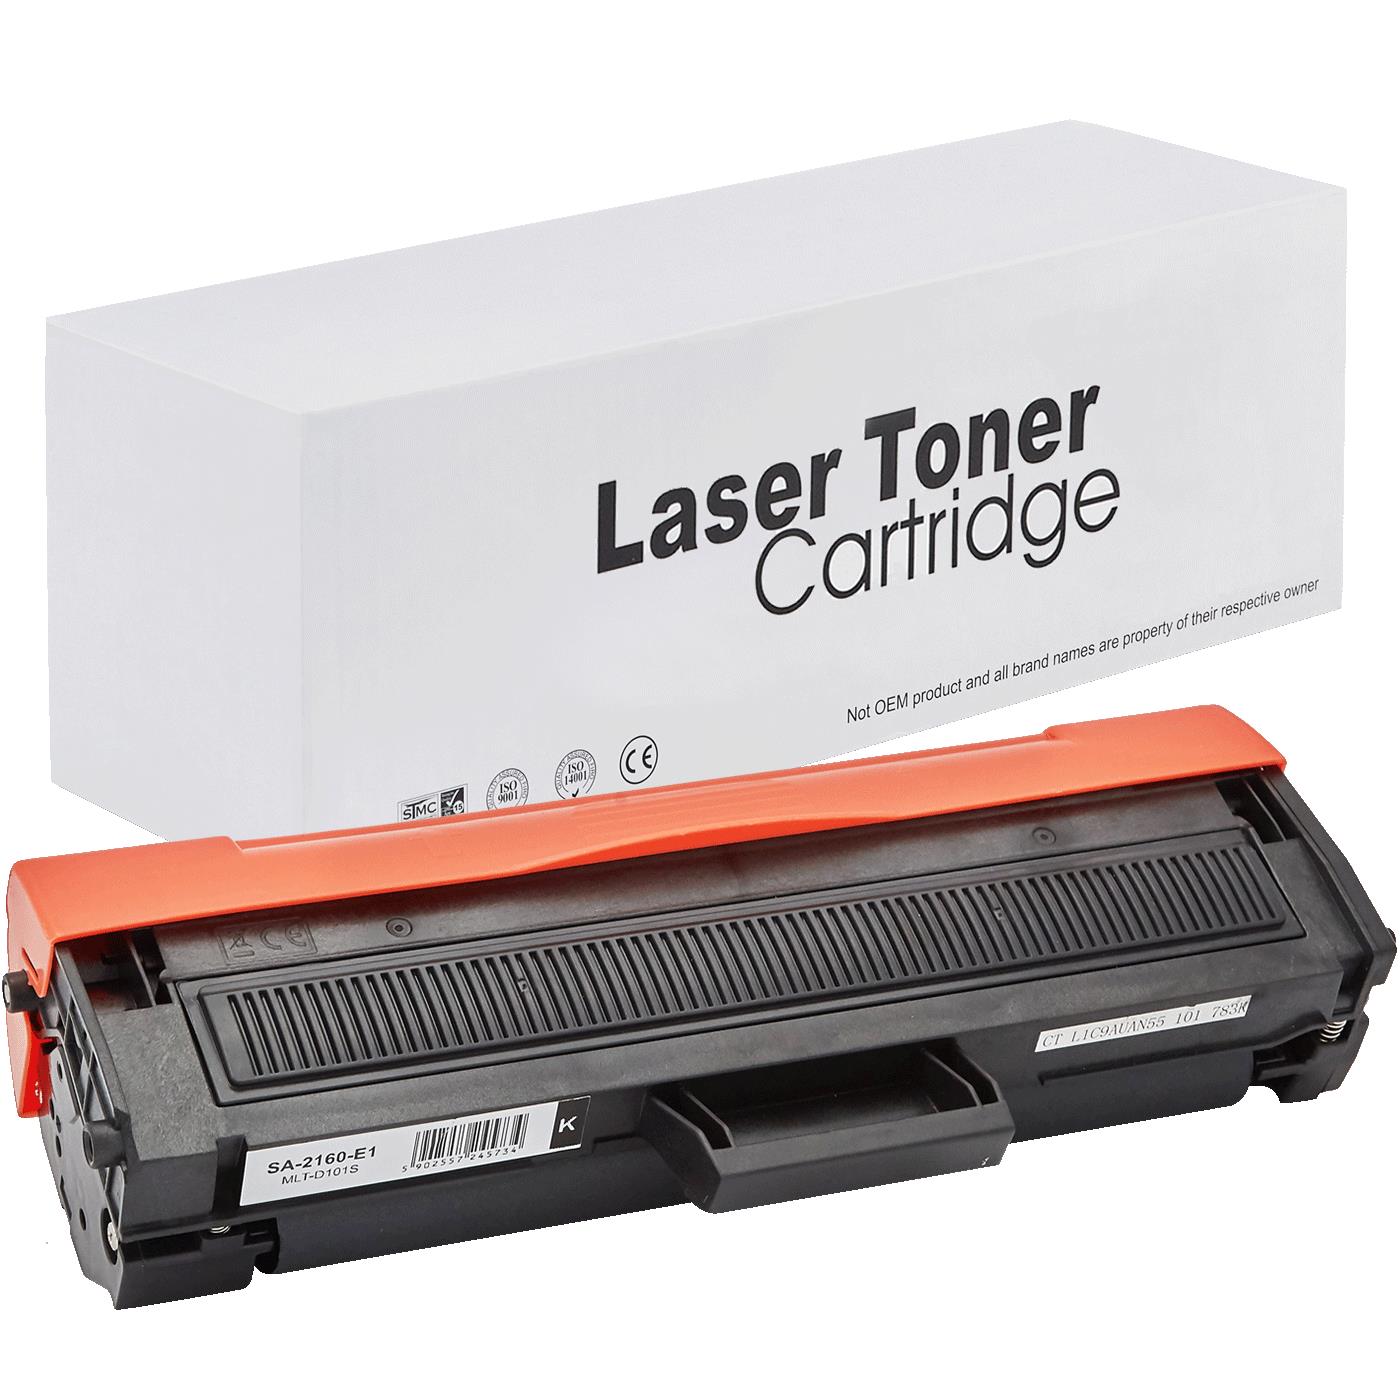 съвместима тонер касета за принтери и печатащи устройства на Samsung 1860 Toner SA-2160 | MLT-D101S / D101S / 101S. Ниски цени, прецизно изпълнение, високо качество.